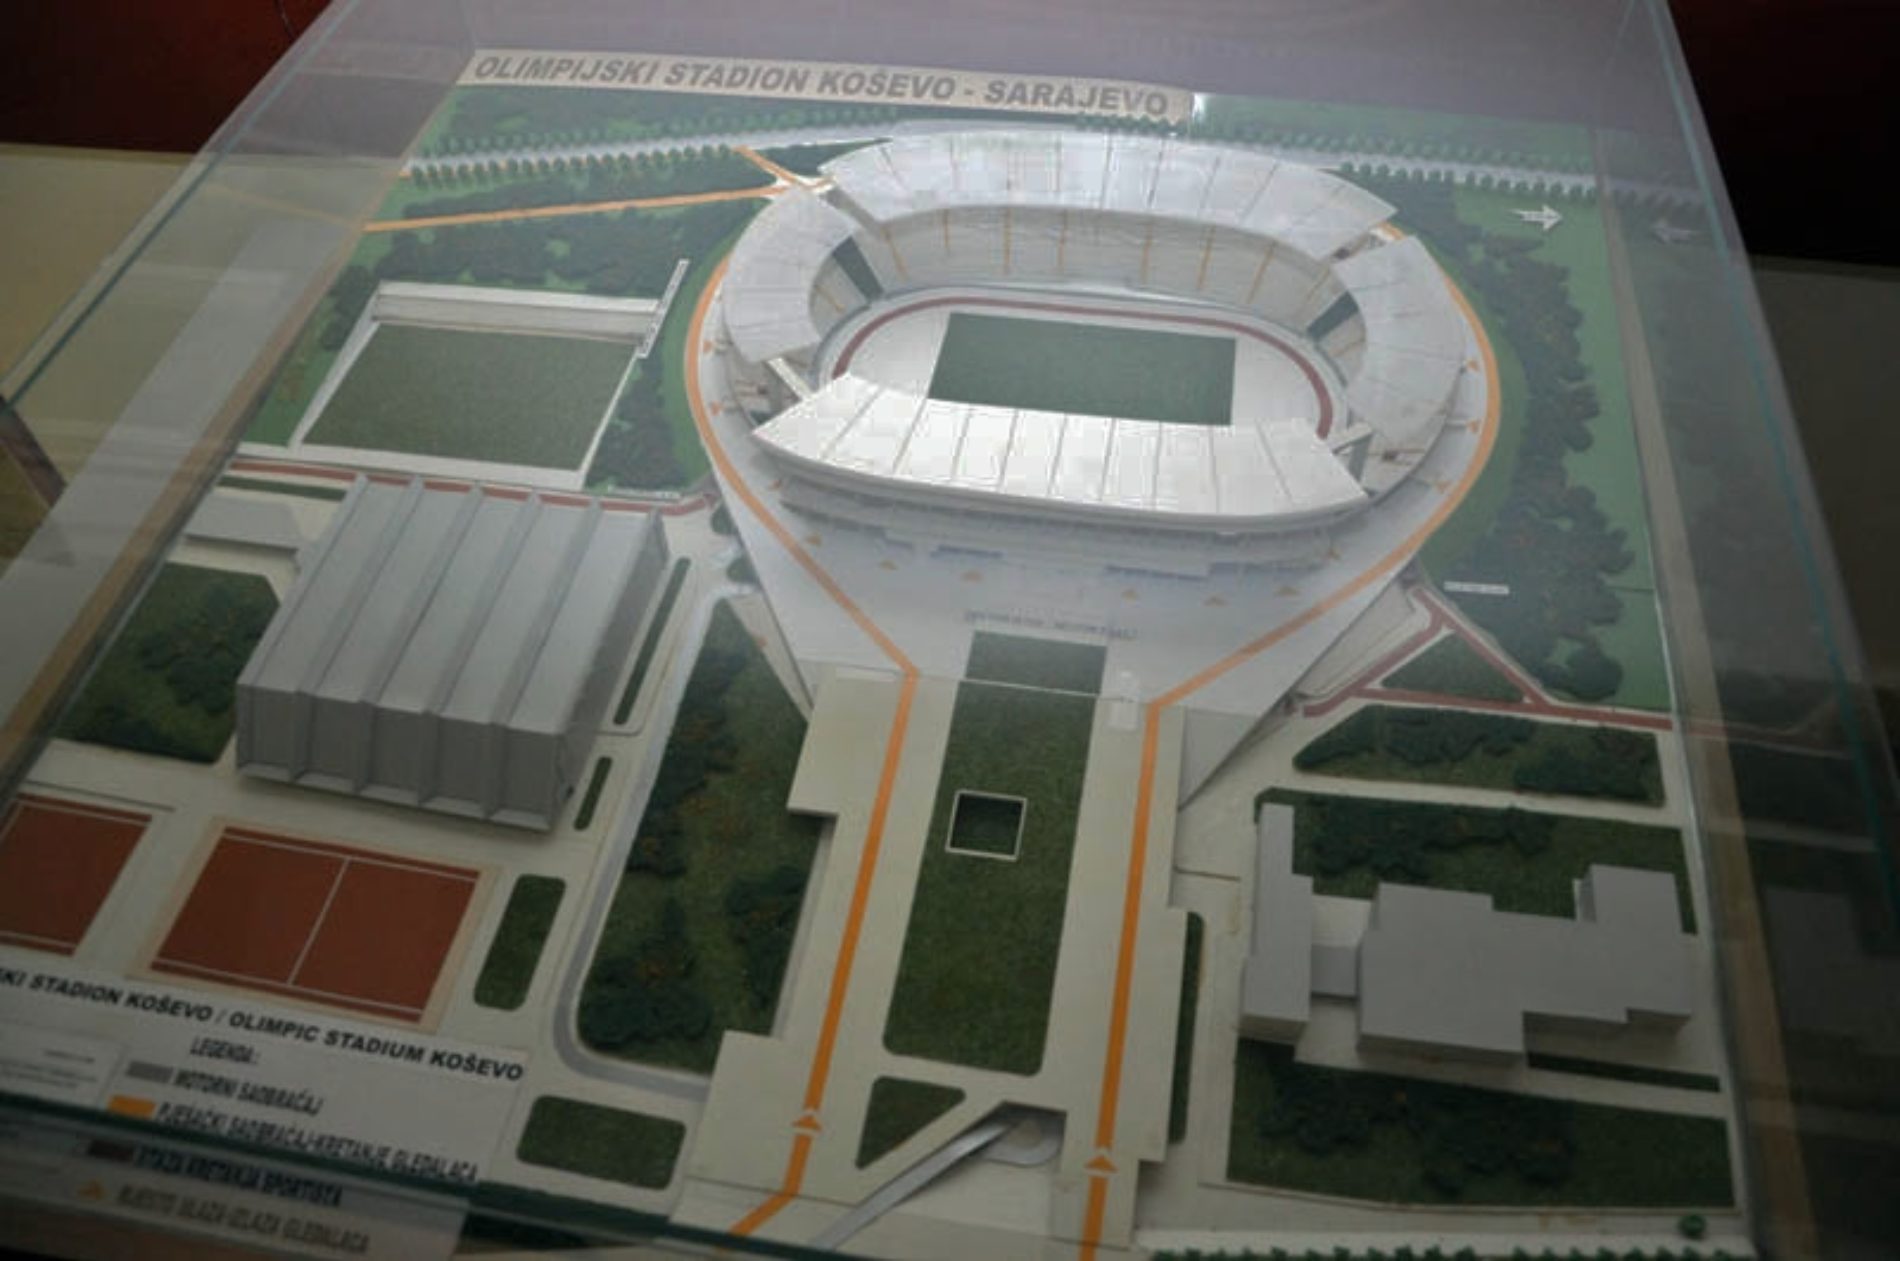 Njemački investitor zainteresovan za ulaganje u modernizaciju stadiona Koševo